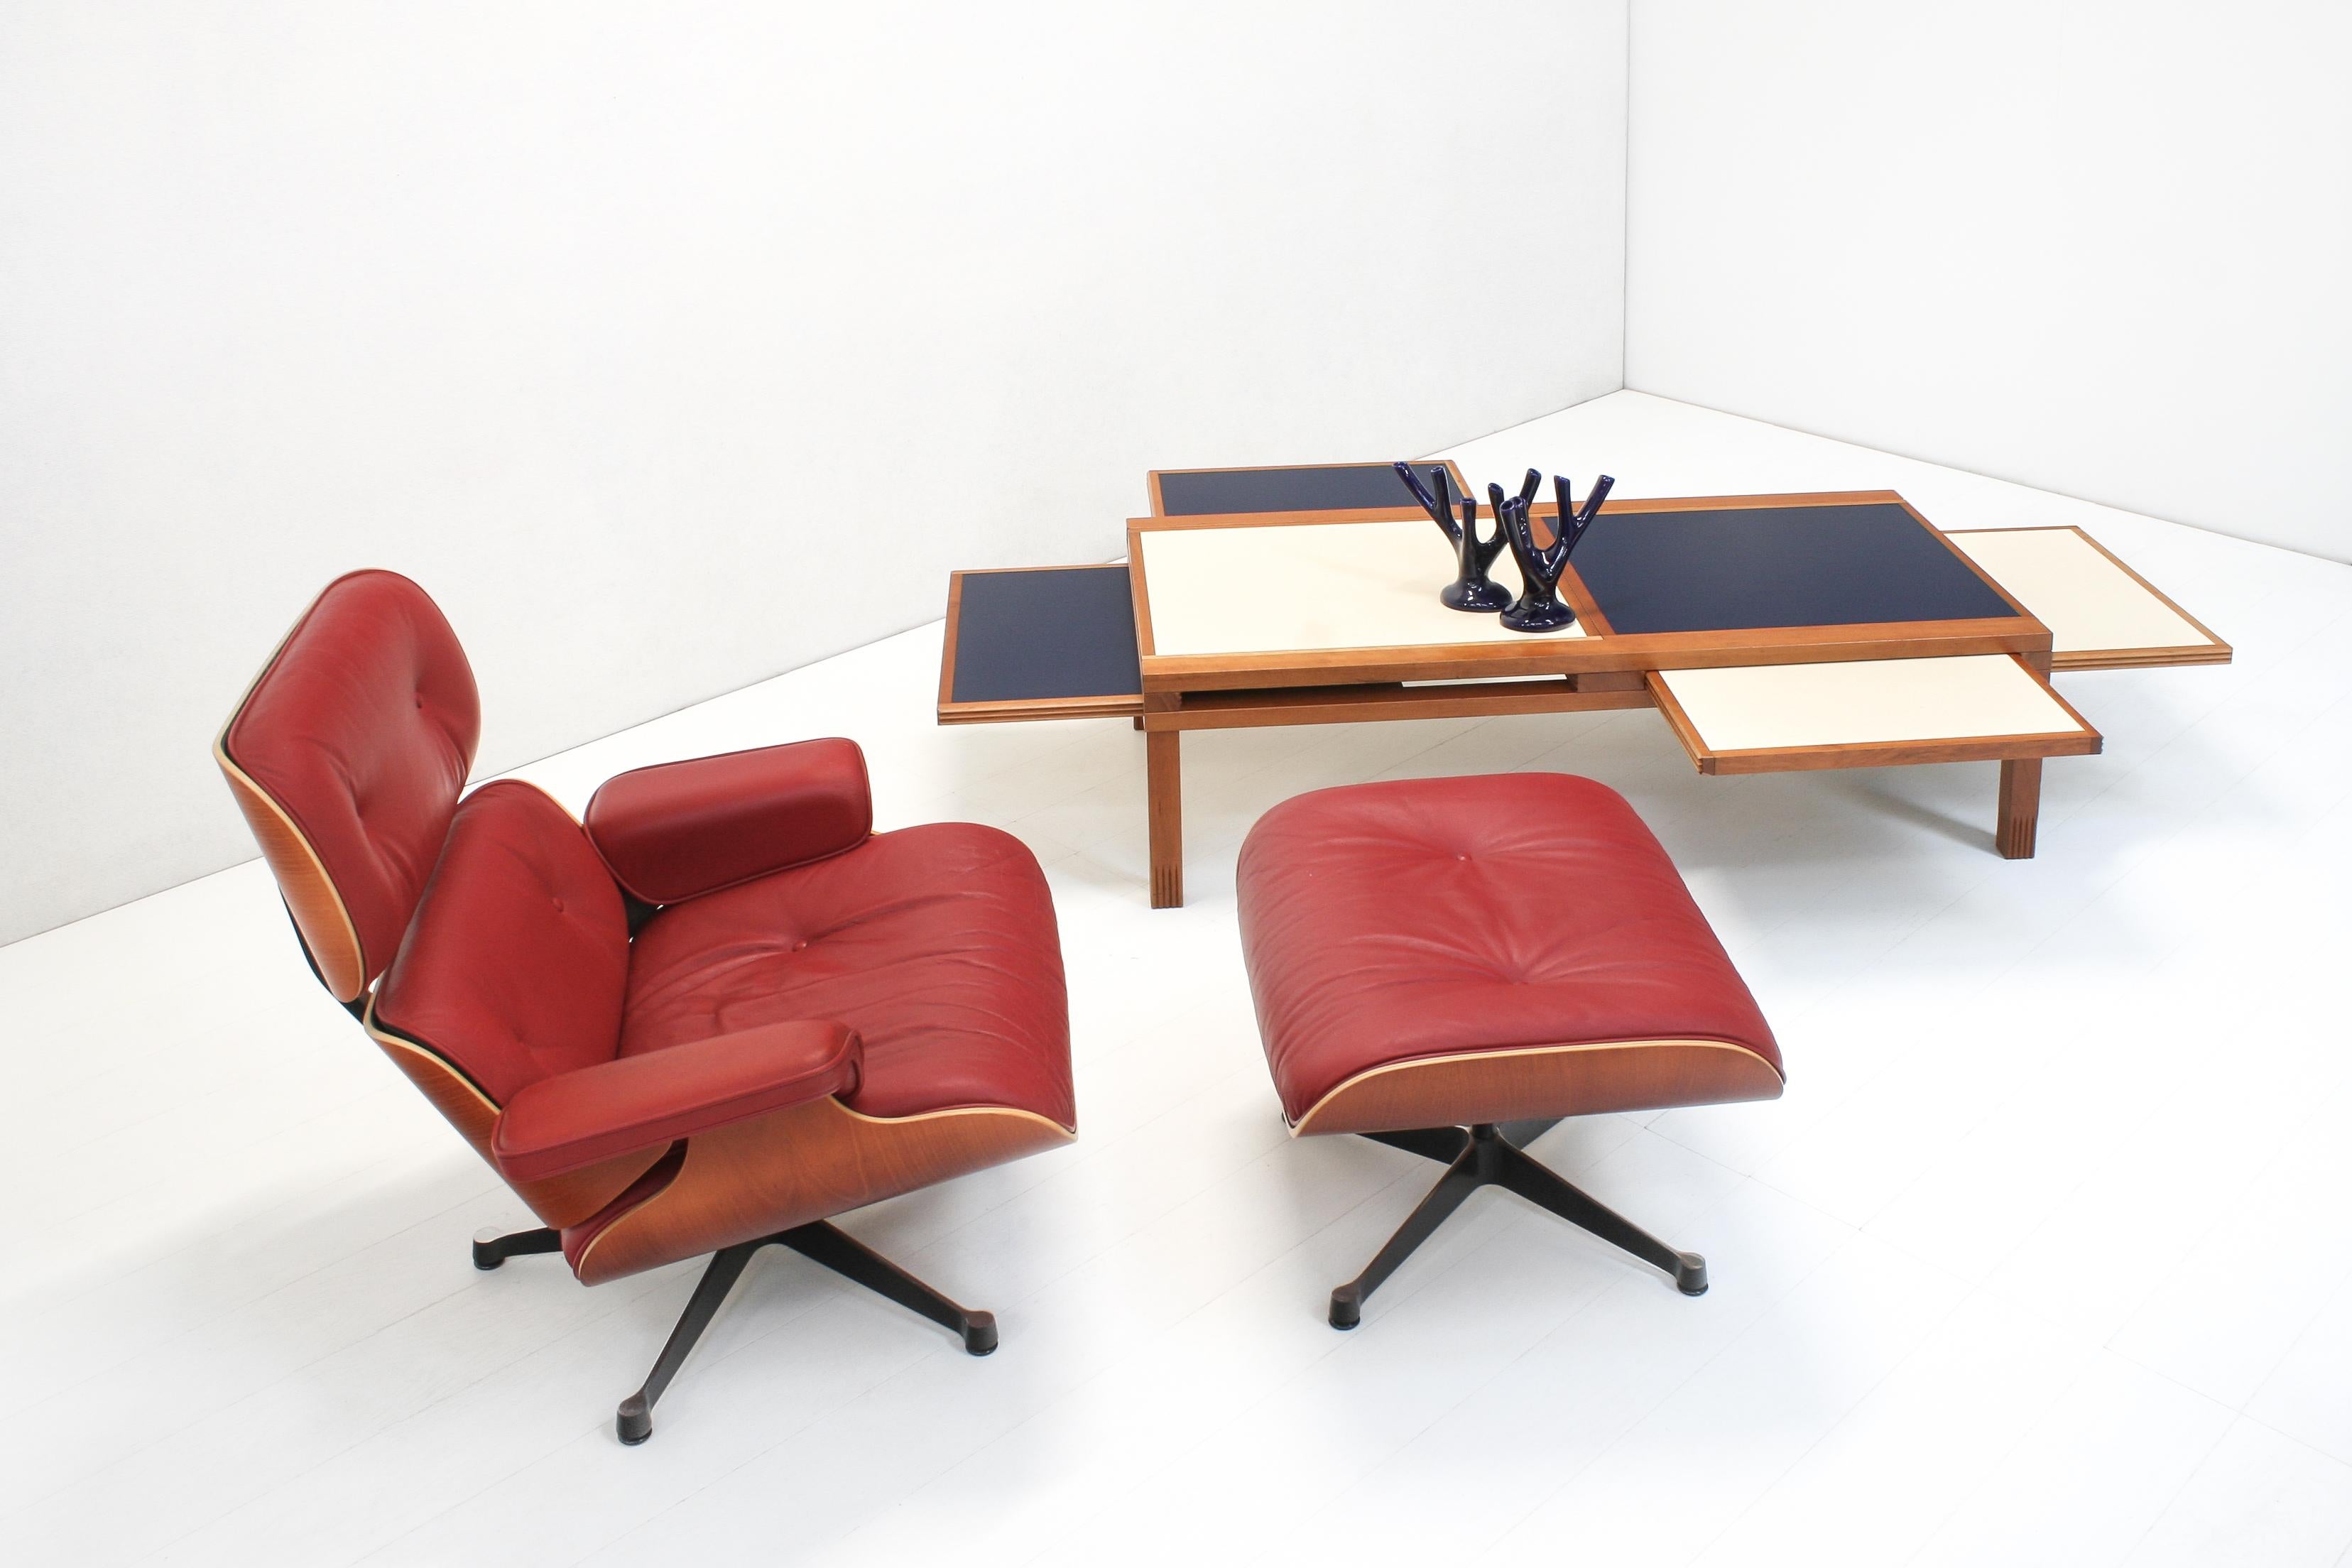 L'emblématique chaise longue 670 avec l'Icone 671, conçue par Charles Eames pour Herman Miller en 1956. Un beau classique du design avec un confort d'assise fantastique.

Cet ensemble a été produit par Vitra et acheté en 2004. 
Les coques en